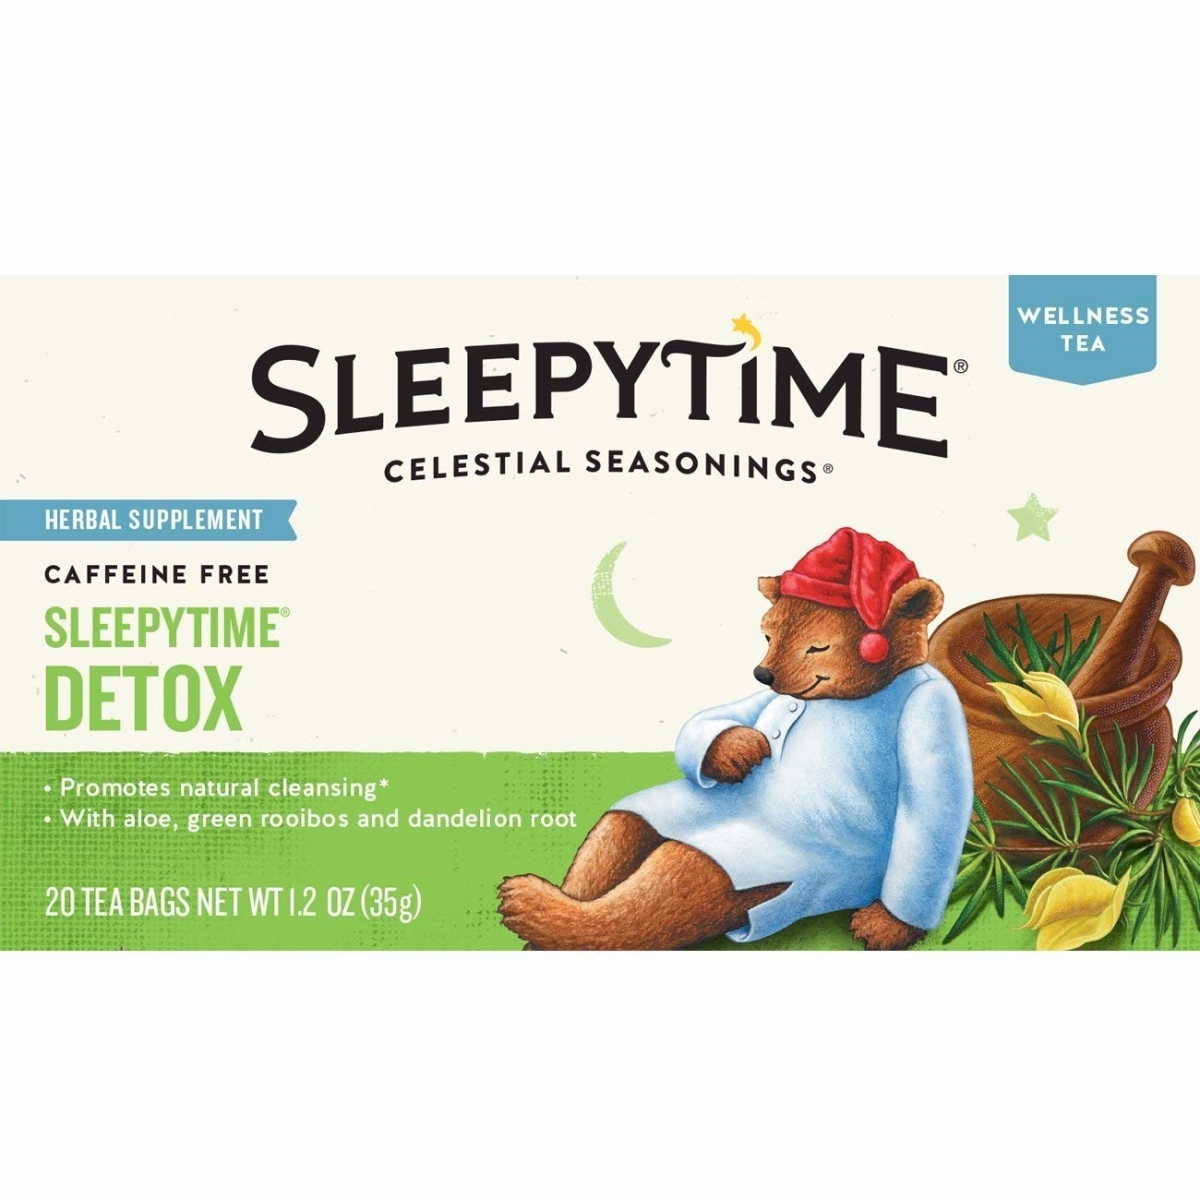 Picture of Celestial Seasonings 302055 Sleepytime Wellness Detox Tea - Pack of 6